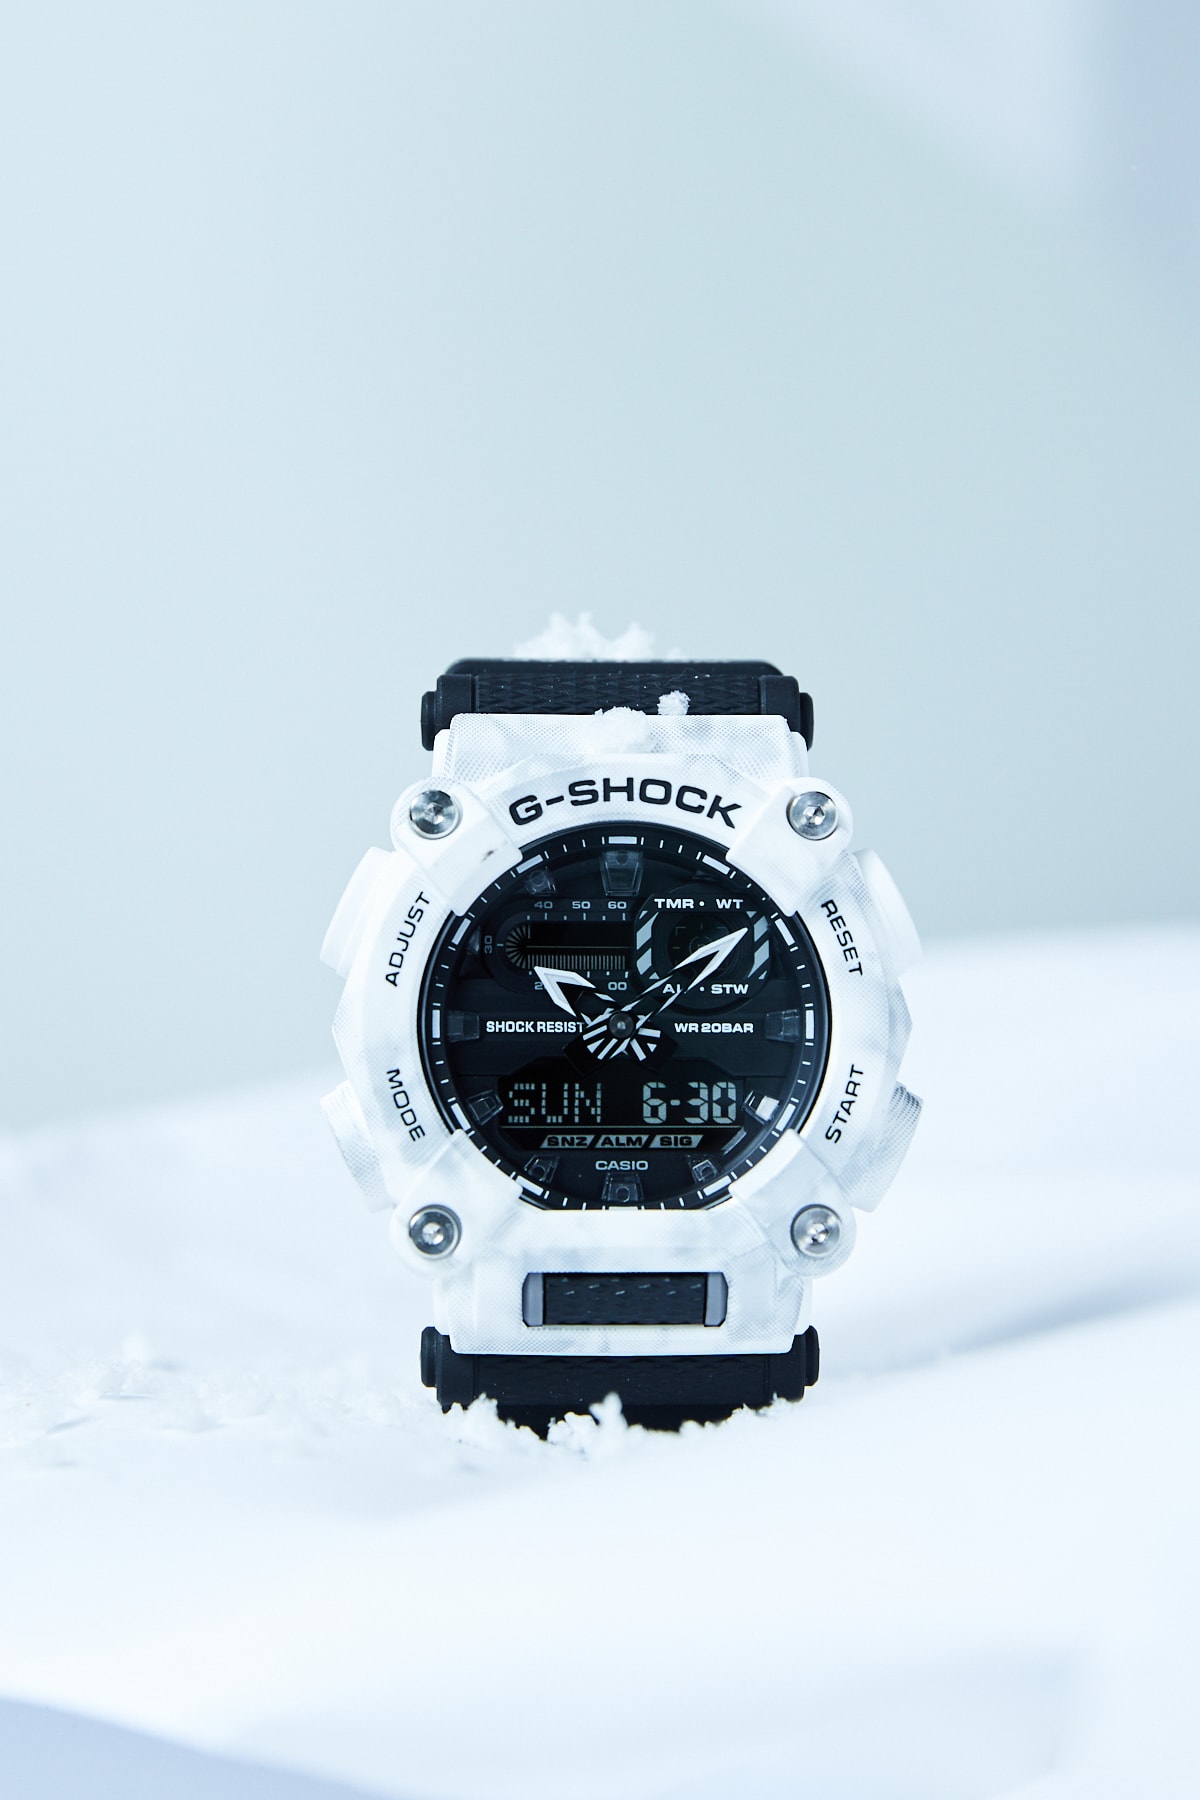 G-SHOCK 推出全新「雪地迷彩」主题系列腕表